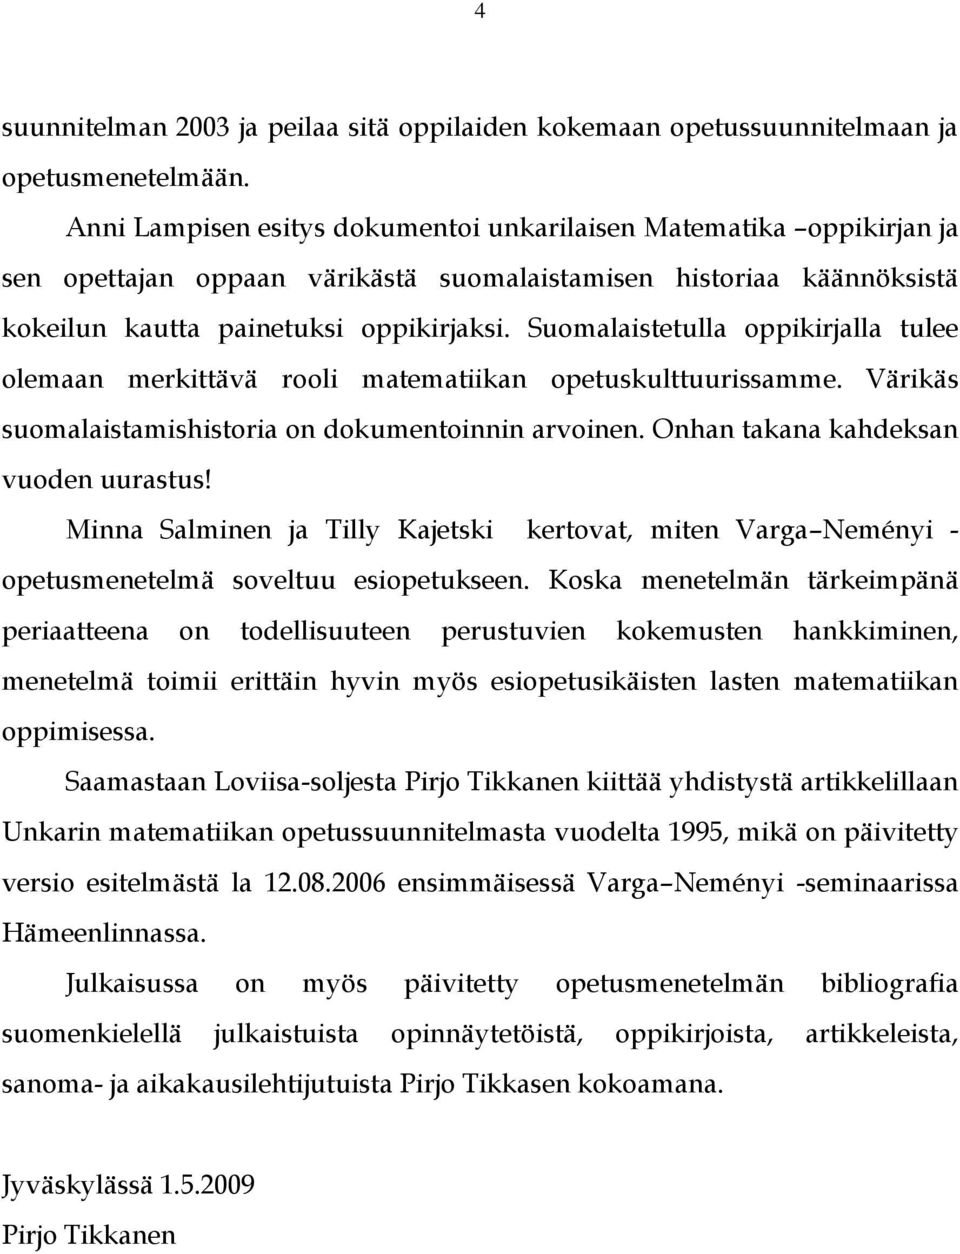 Suomalaistetulla oppikirjalla tulee olemaan merkittävä rooli matematiikan opetuskulttuurissamme. Värikäs suomalaistamishistoria on dokumentoinnin arvoinen. Onhan takana kahdeksan vuoden uurastus!